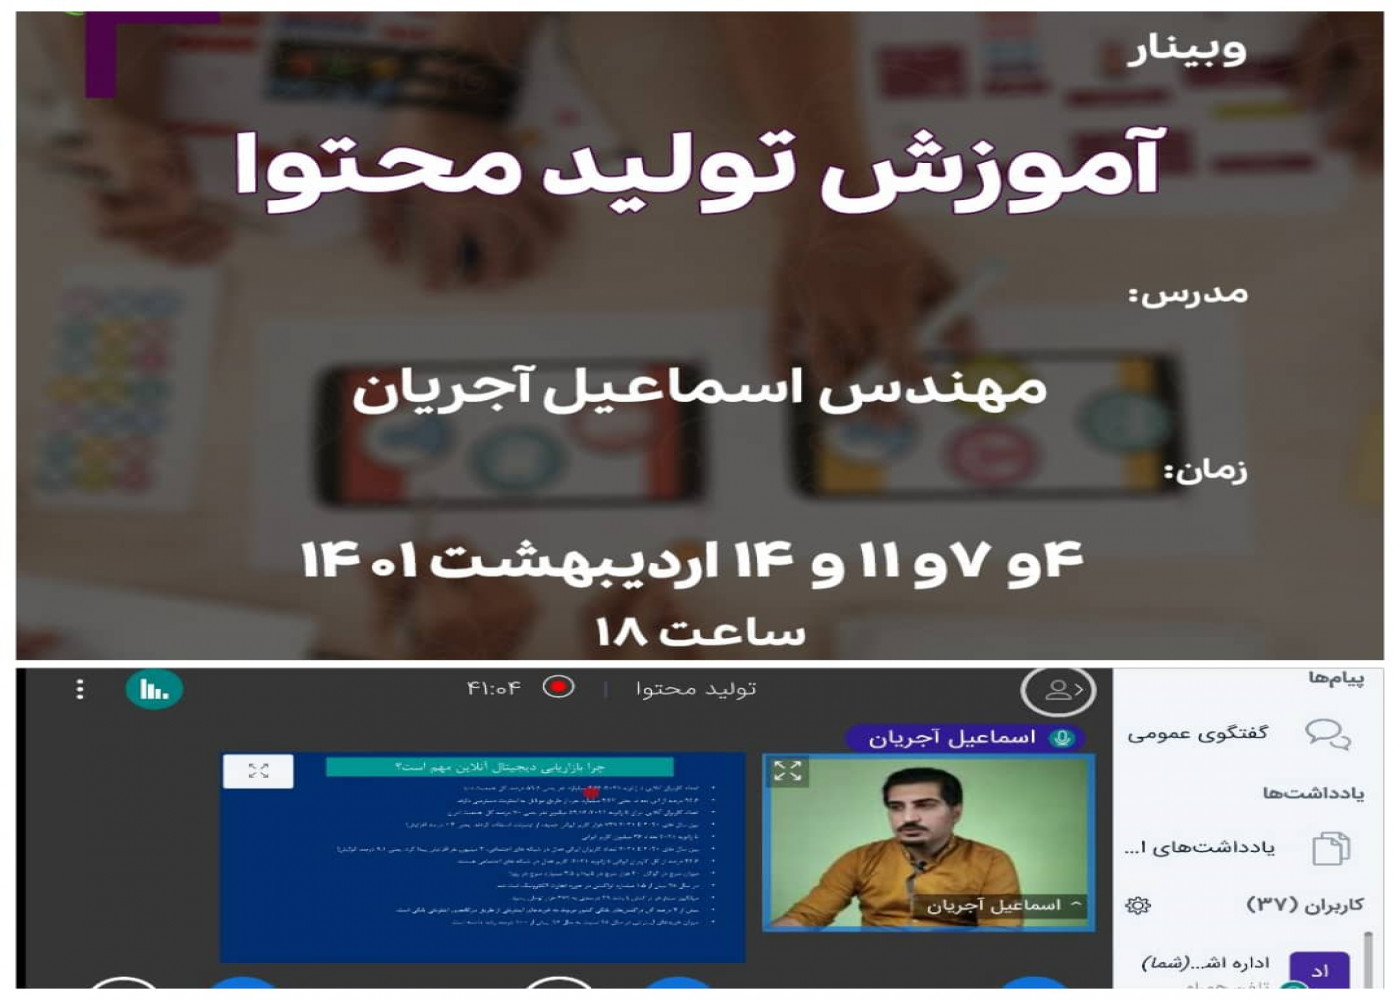 برگزاری وبینار آموزشی آشنایی با تولید محتوا در اصفهان